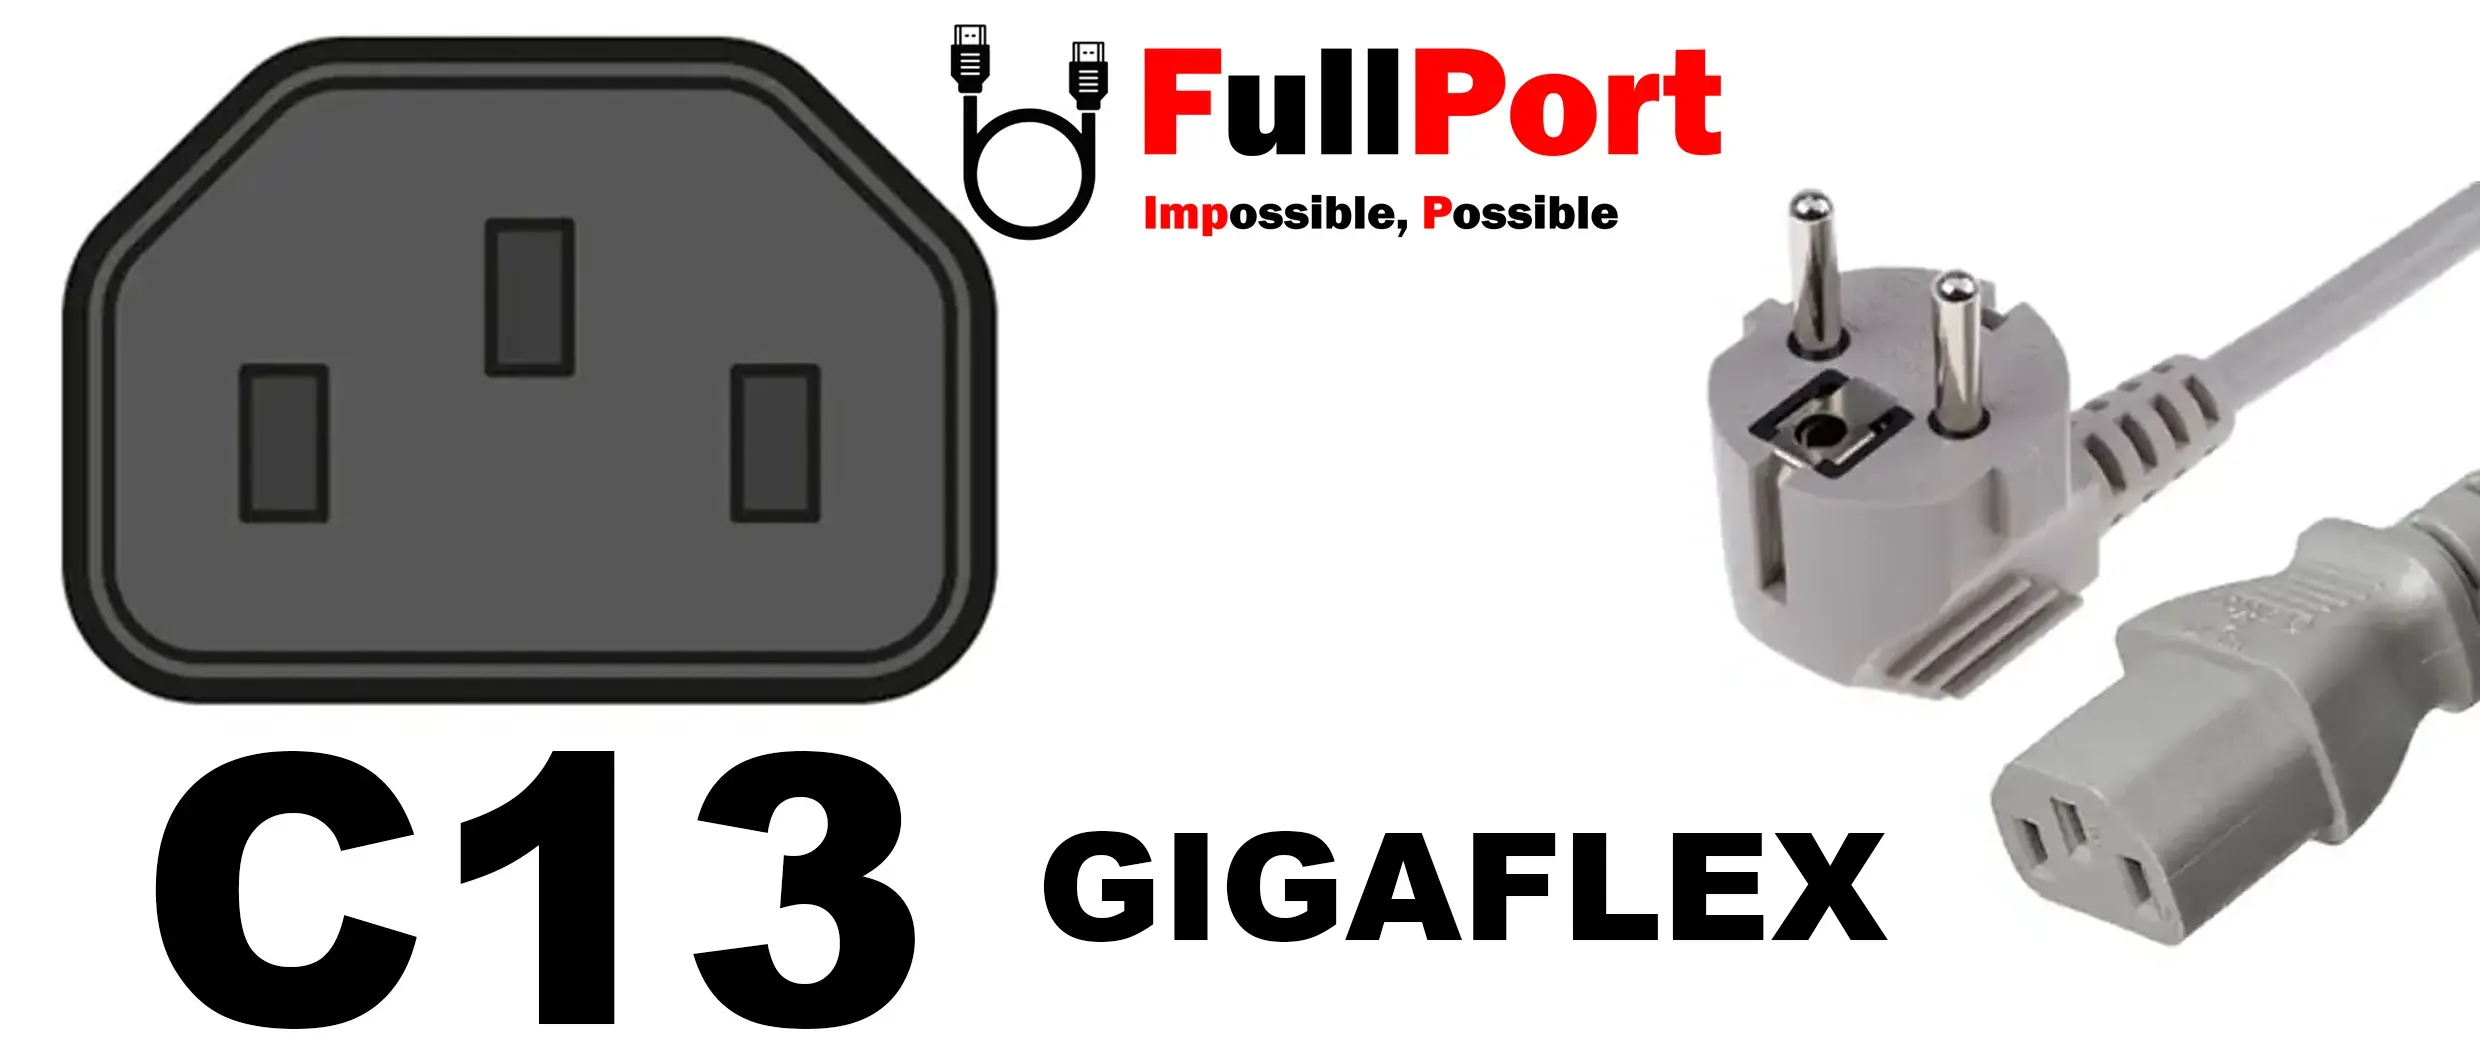 خرید کابل برق کیس EU-C13 گیگافلکس | GIGAFLEX با طول 1.8 متر از فروشگاه اینترنتی فول پورت